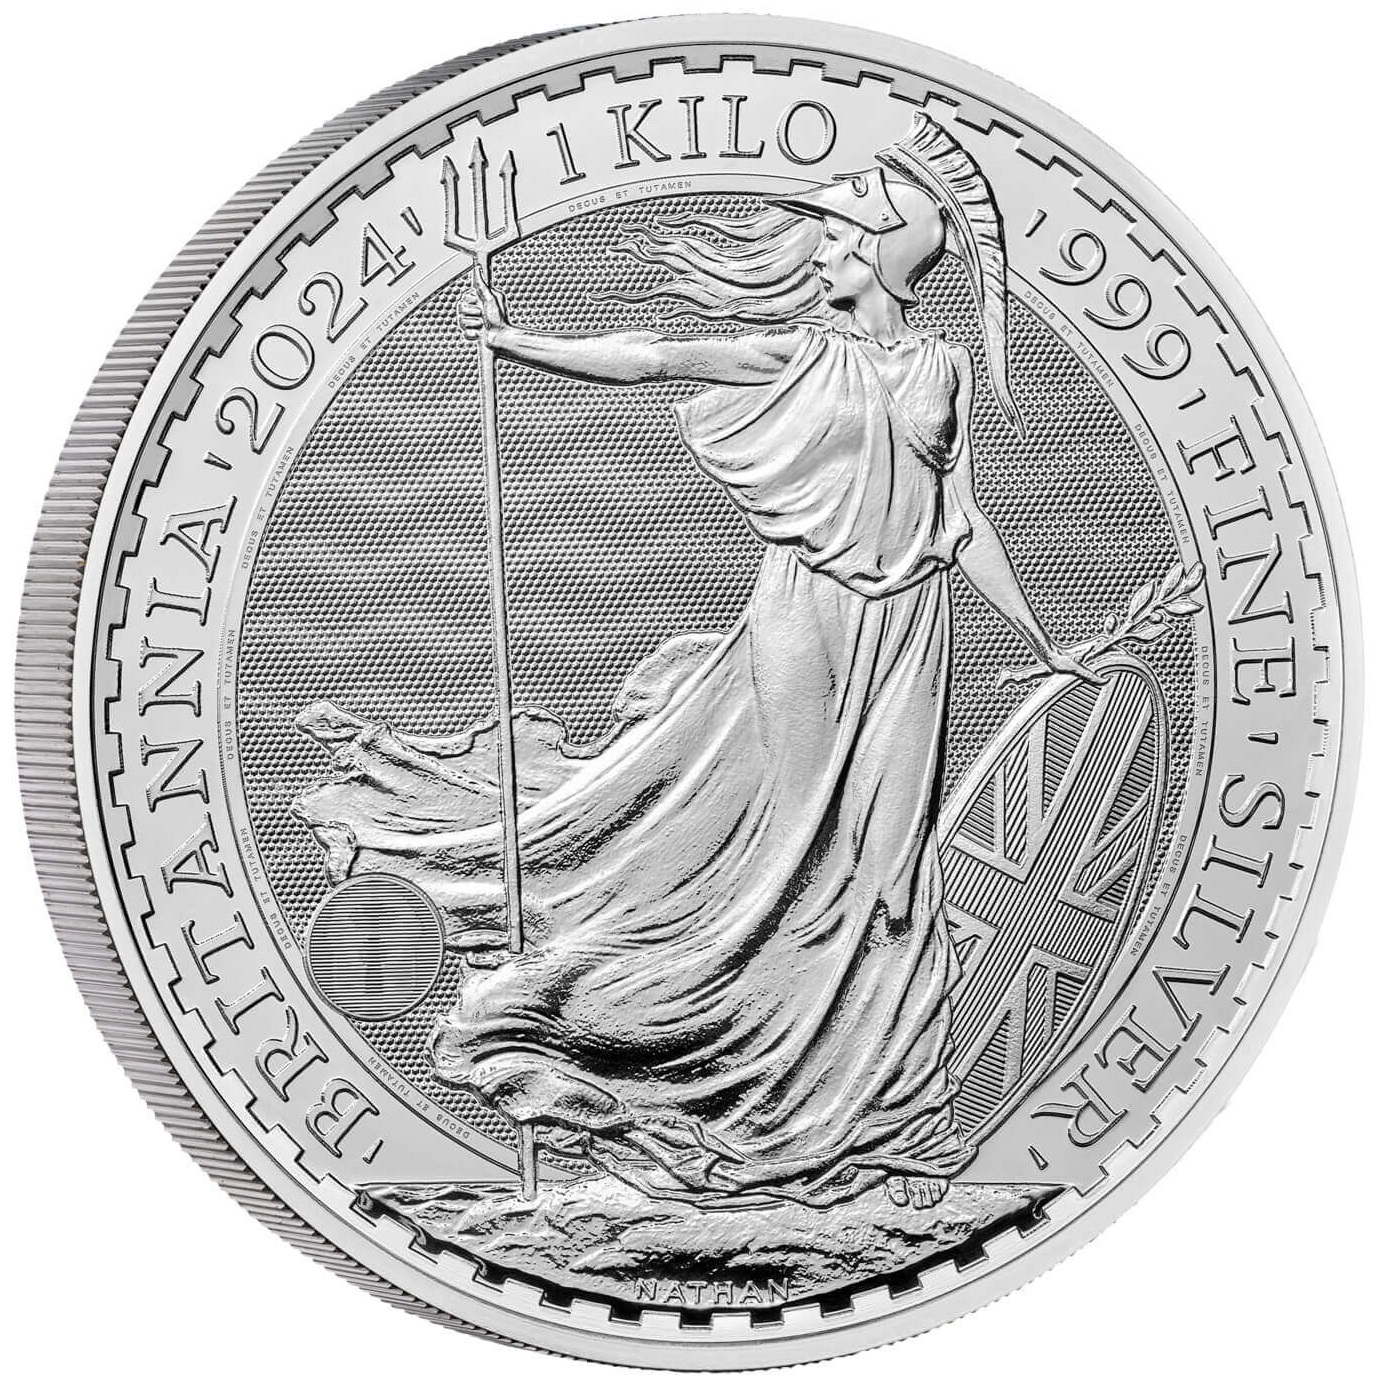 2024 1 kilo oz. Silver Britannia bullion coin - reverse side - showing edge